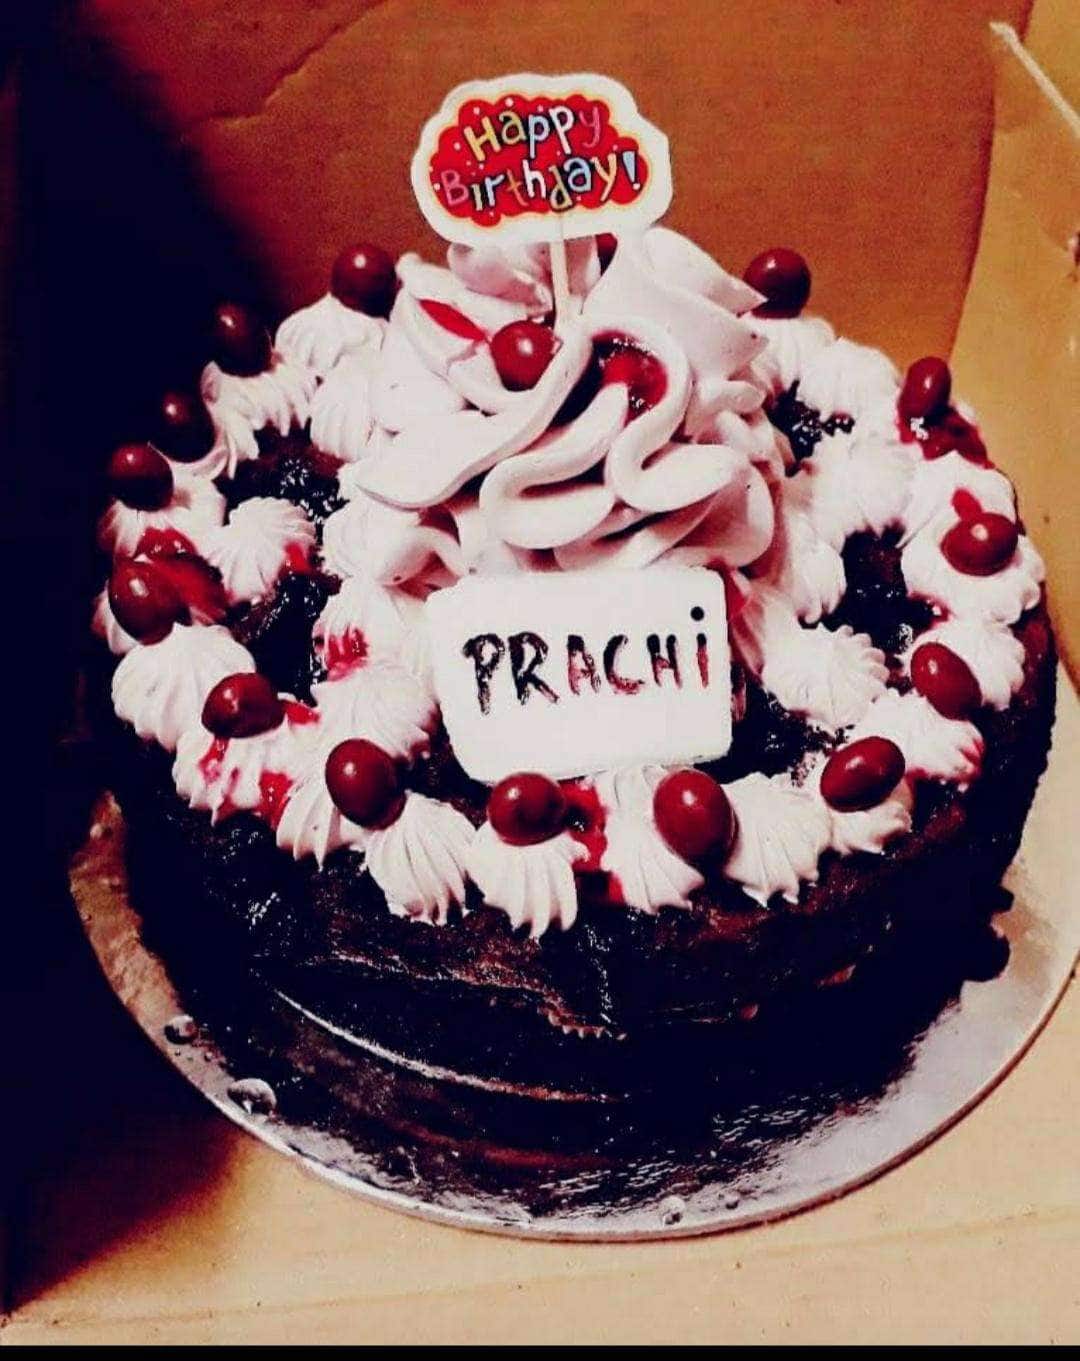 Prachi's birthday cake | Prachi's birthday cake | Flickr